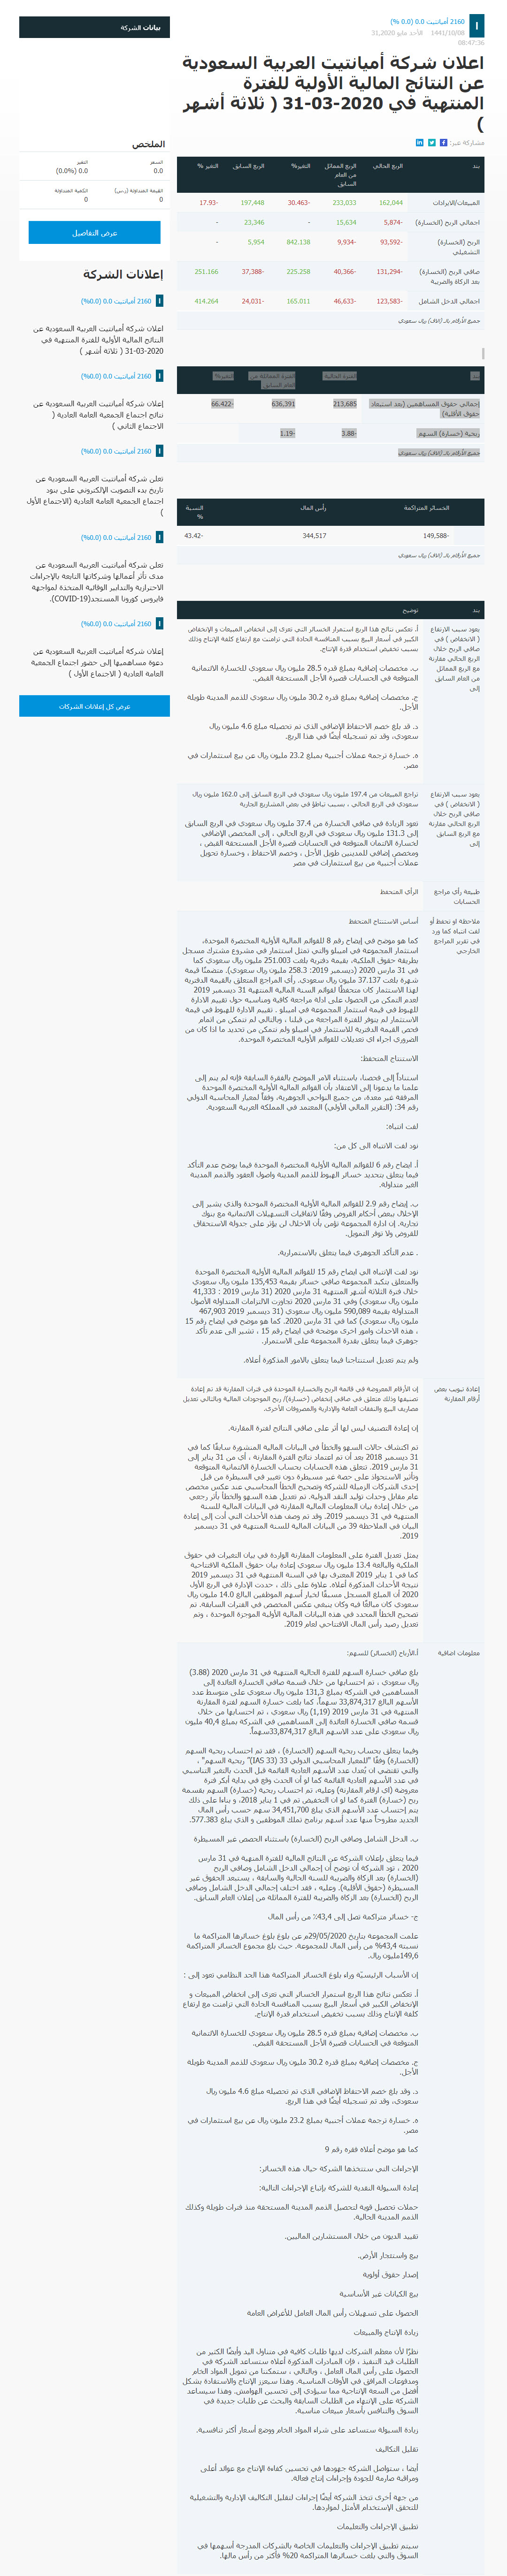 Amiantit Website Announcement arabic